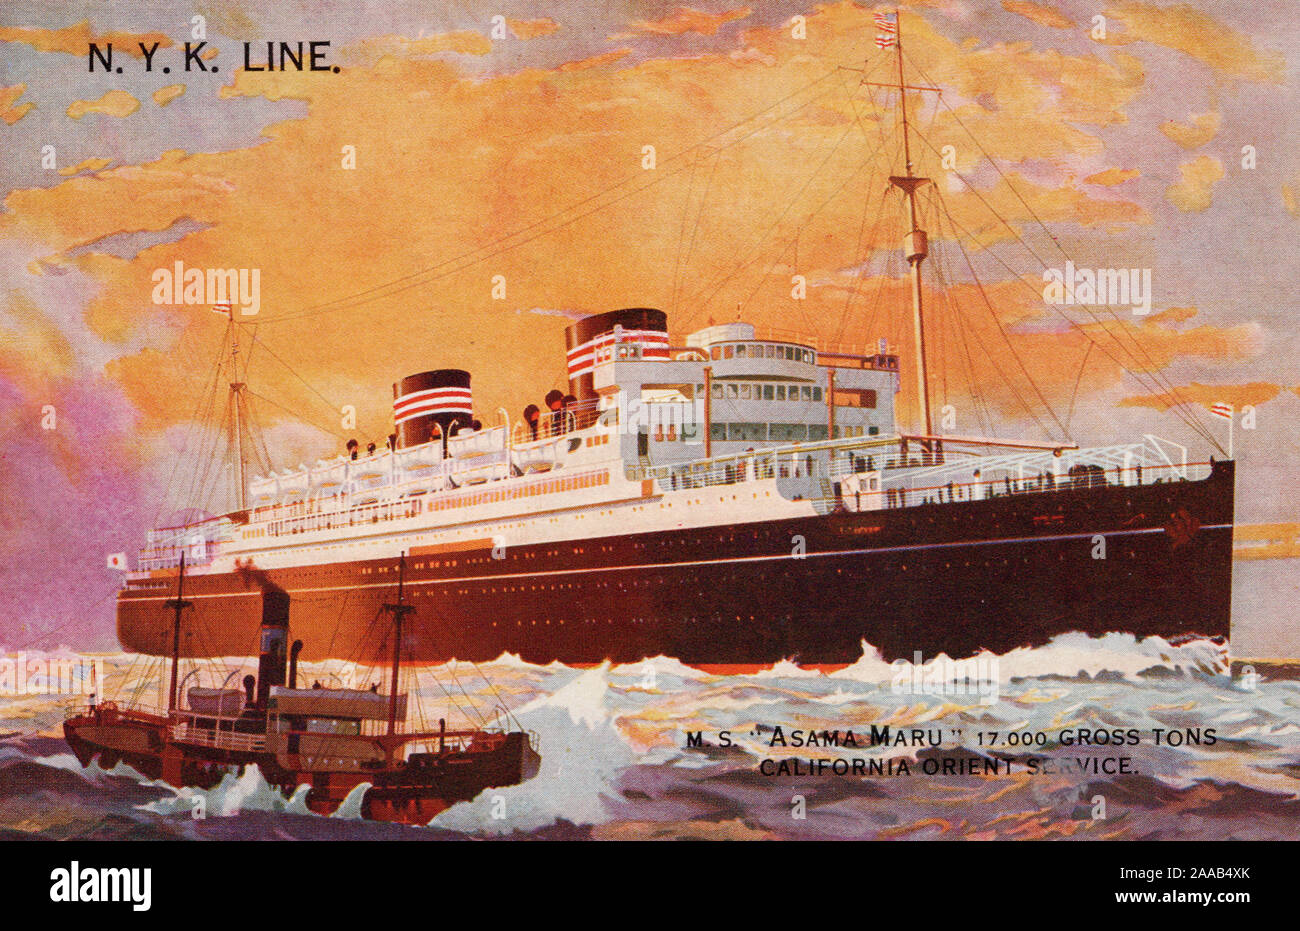 « Asama Maru », navire de ligne NYK, ancienne carte postale. Banque D'Images